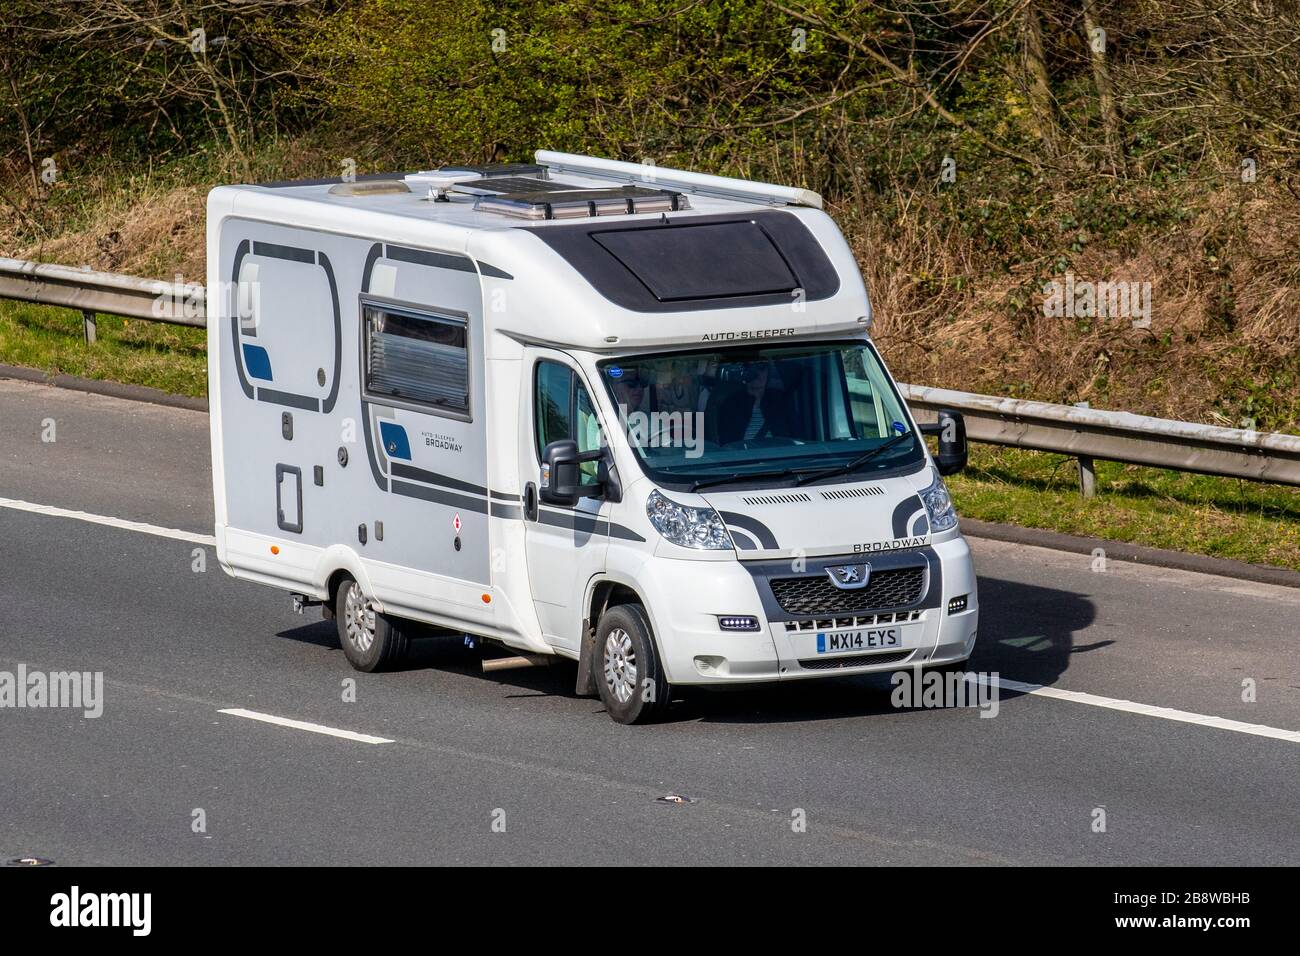 2014 Peugeot Boxer 335 HDI de niveau 2 ; Touring Caravan and Motorhomes, camping-cars, véhicule de loisirs RV, vacances en famille, vacances, vacances en caravane, vie sur la route, autoroute M6 Manchester, Royaume-Uni Banque D'Images